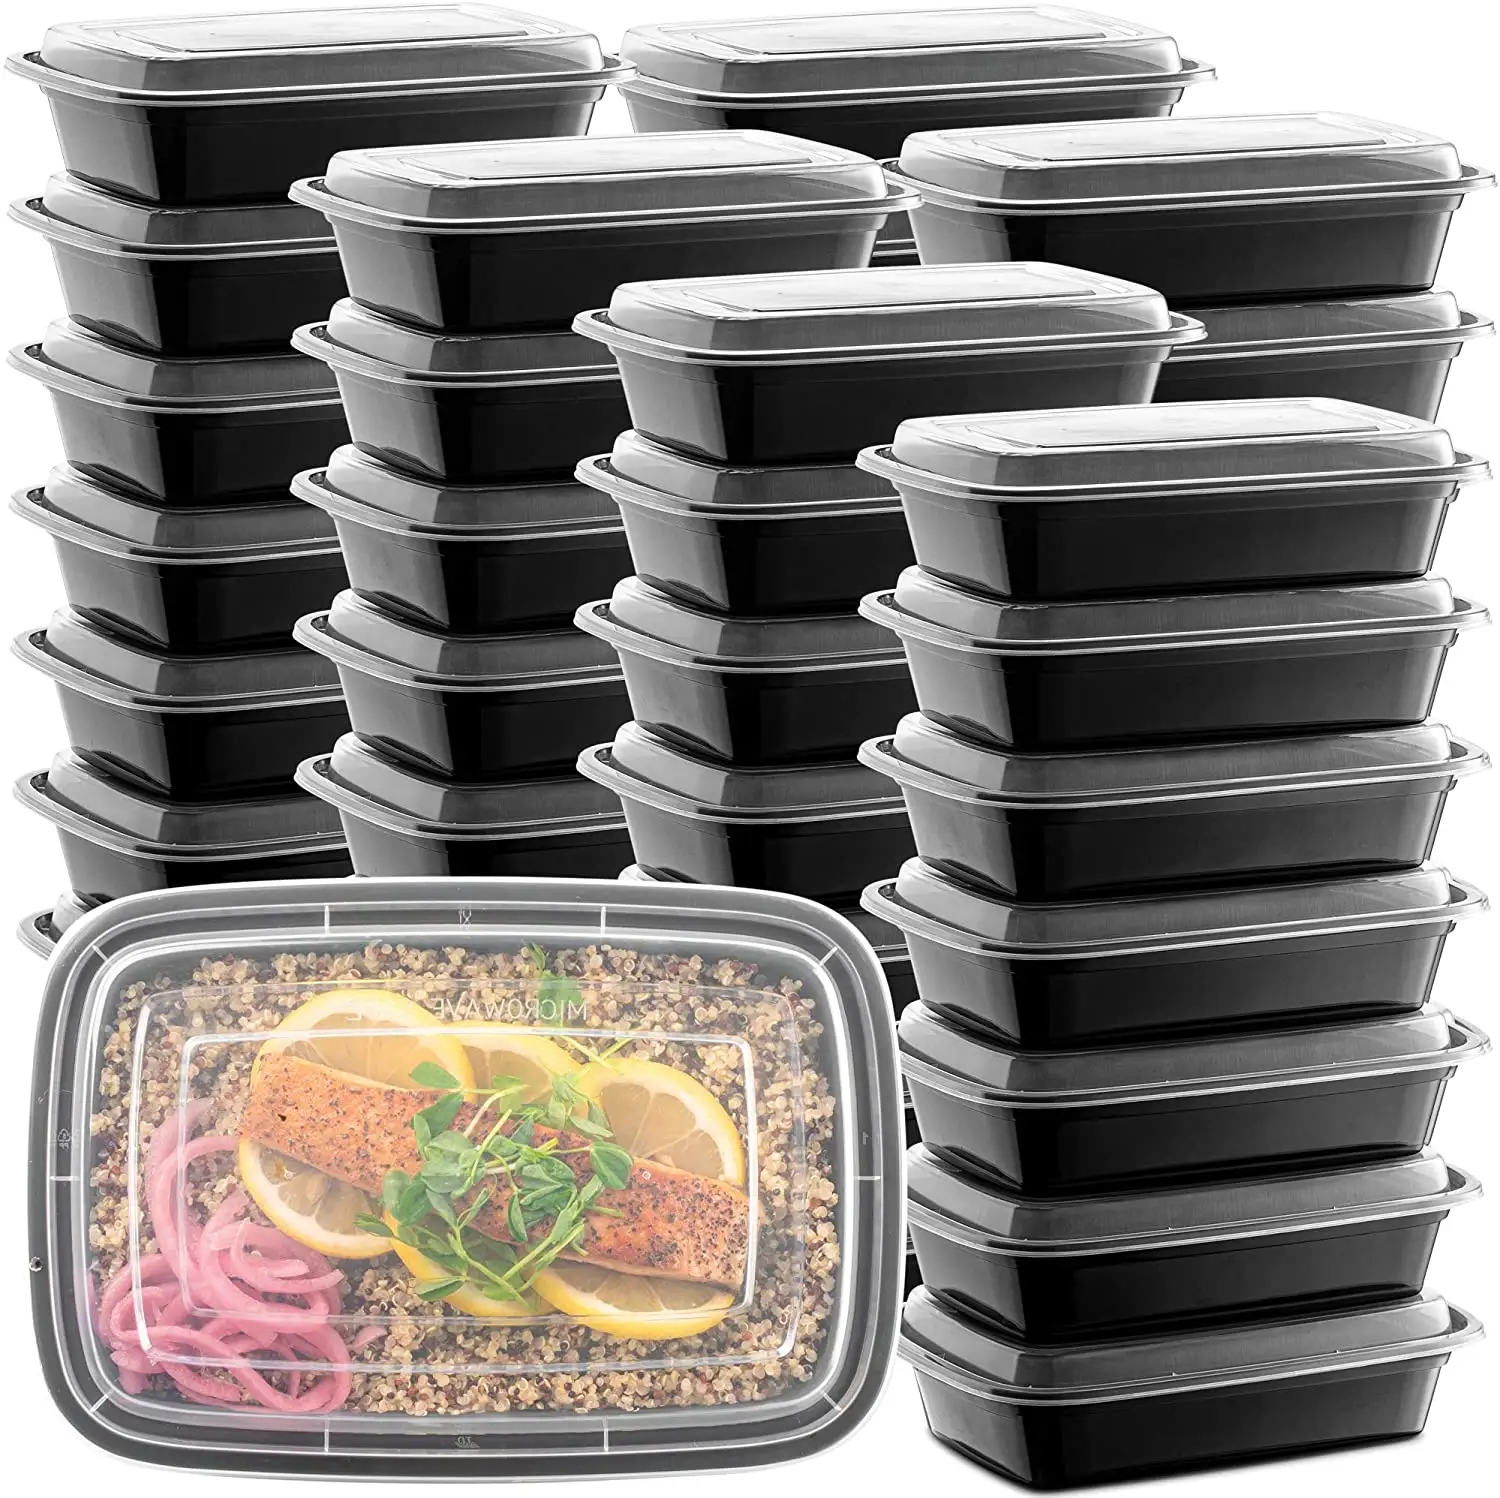 קופסת ארוחת צהריים בנטו אריזת מזון מיכל בסיס פלסטיק לדרך הכנה לארוחה חד פעמית מסעדה הזרקה שחורה רב תכליתית